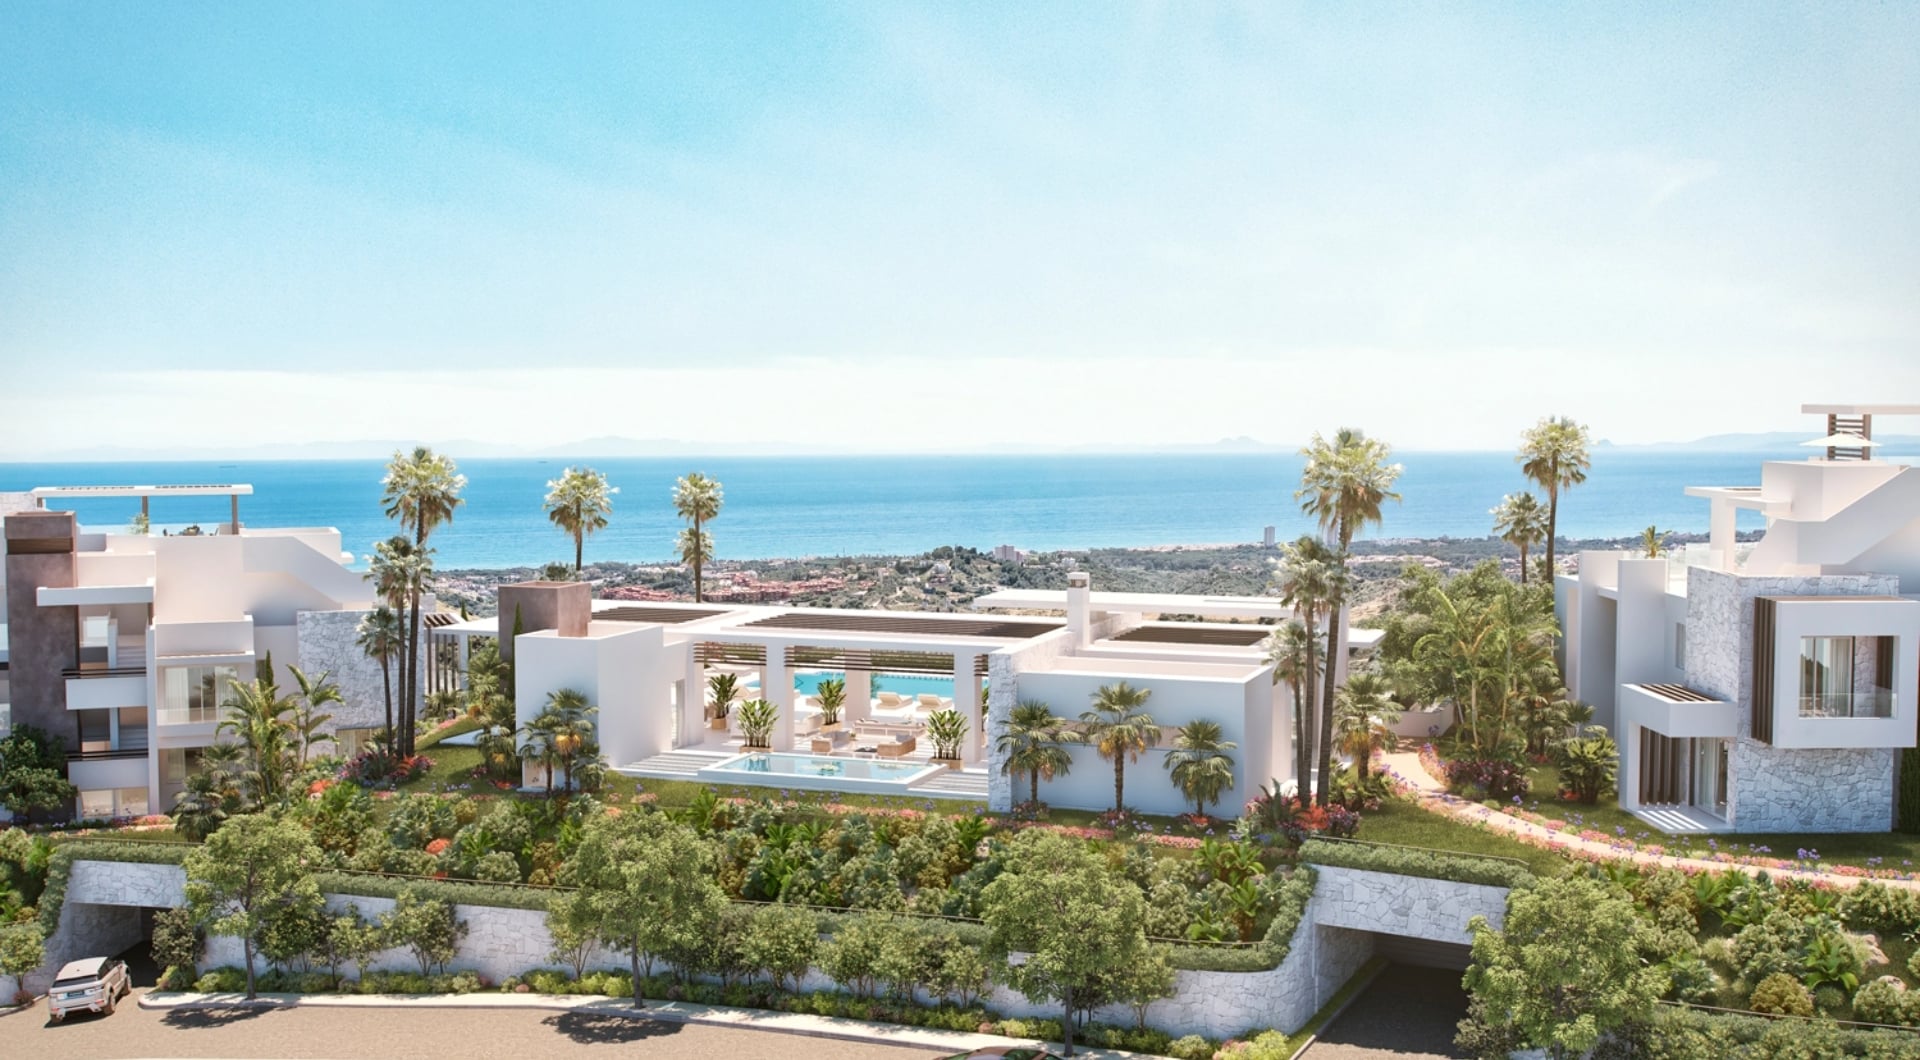 Promoción inmobiliaria de apartamentos de lujo situada en Marbella este para el que realizamos una estrategia de marketing digital y ventas 360 e intervenimos en todos los procesos de diseño